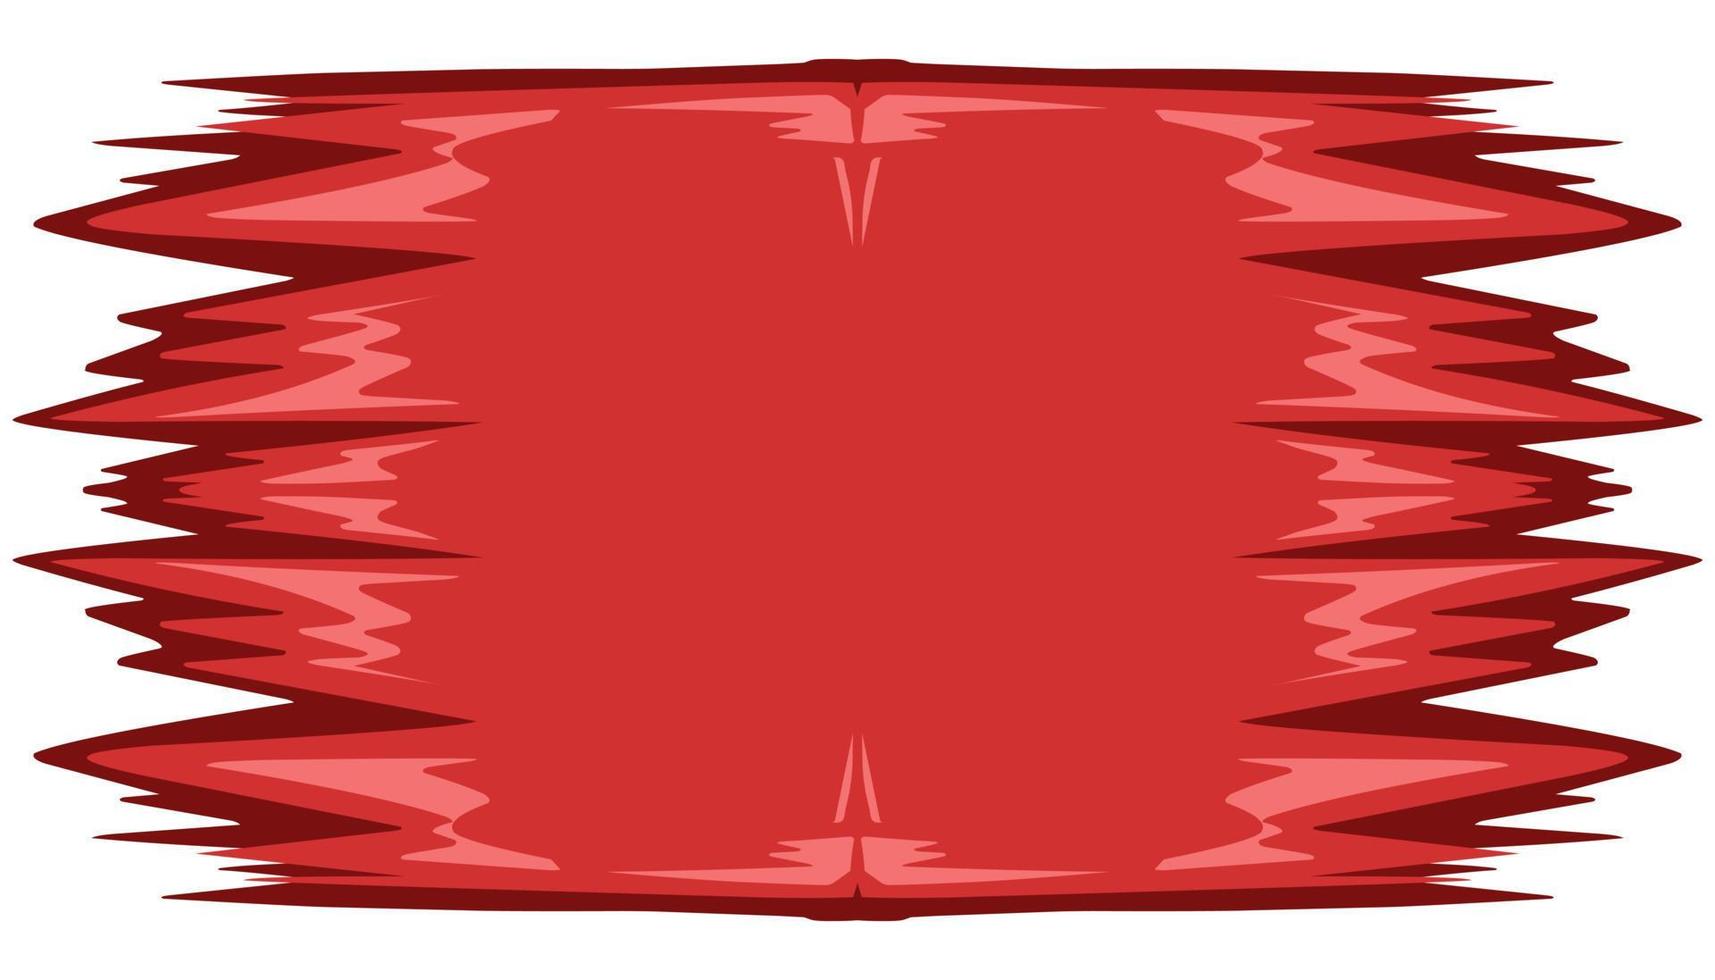 abstrakt bakgrund illustration med en röd tema vektor